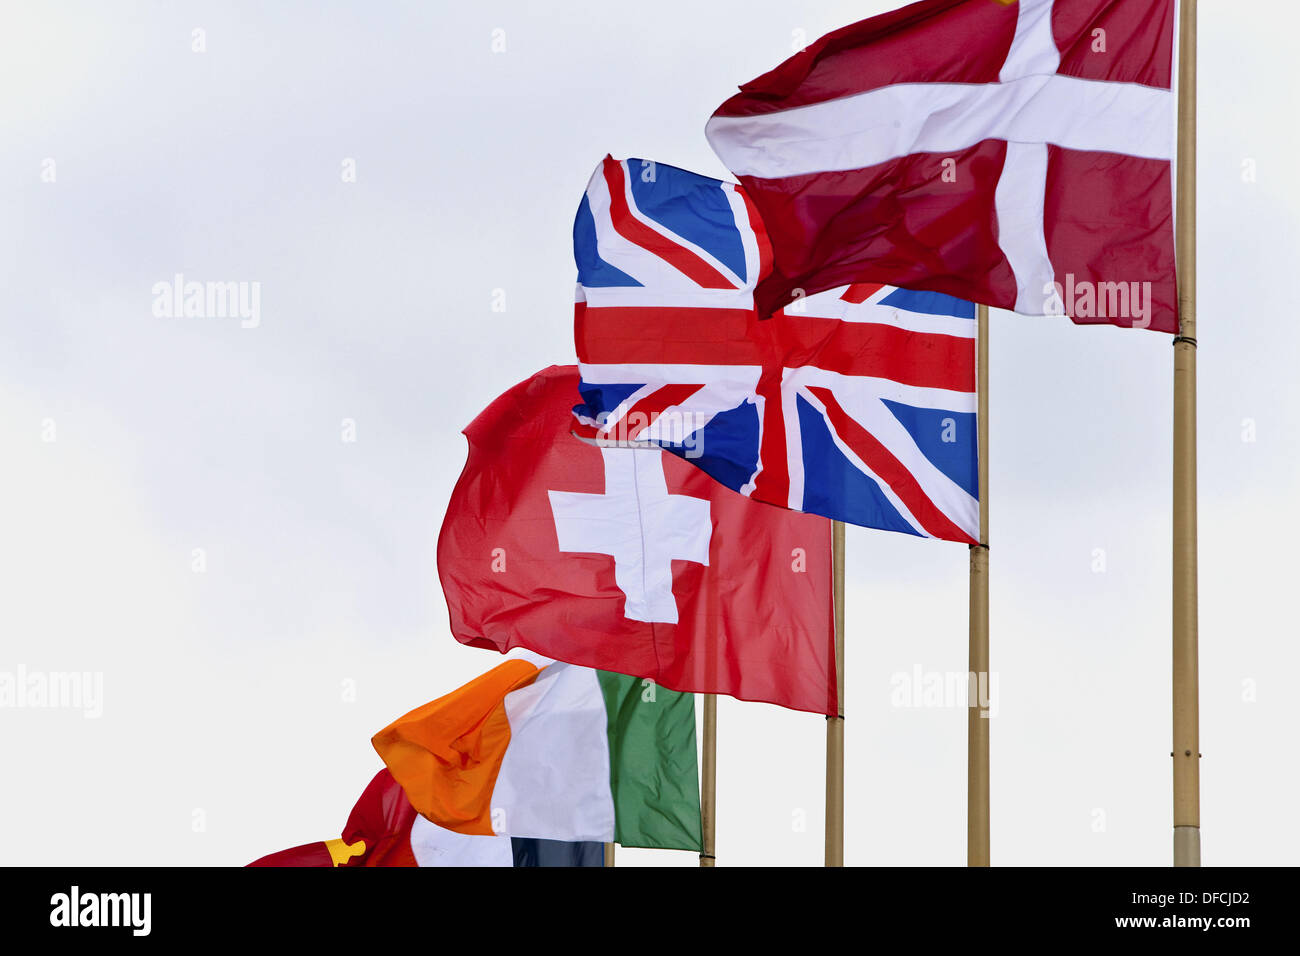 Battant pavillon du Danemark, Royaume-Uni, Suisse et l'Irlande Banque D'Images